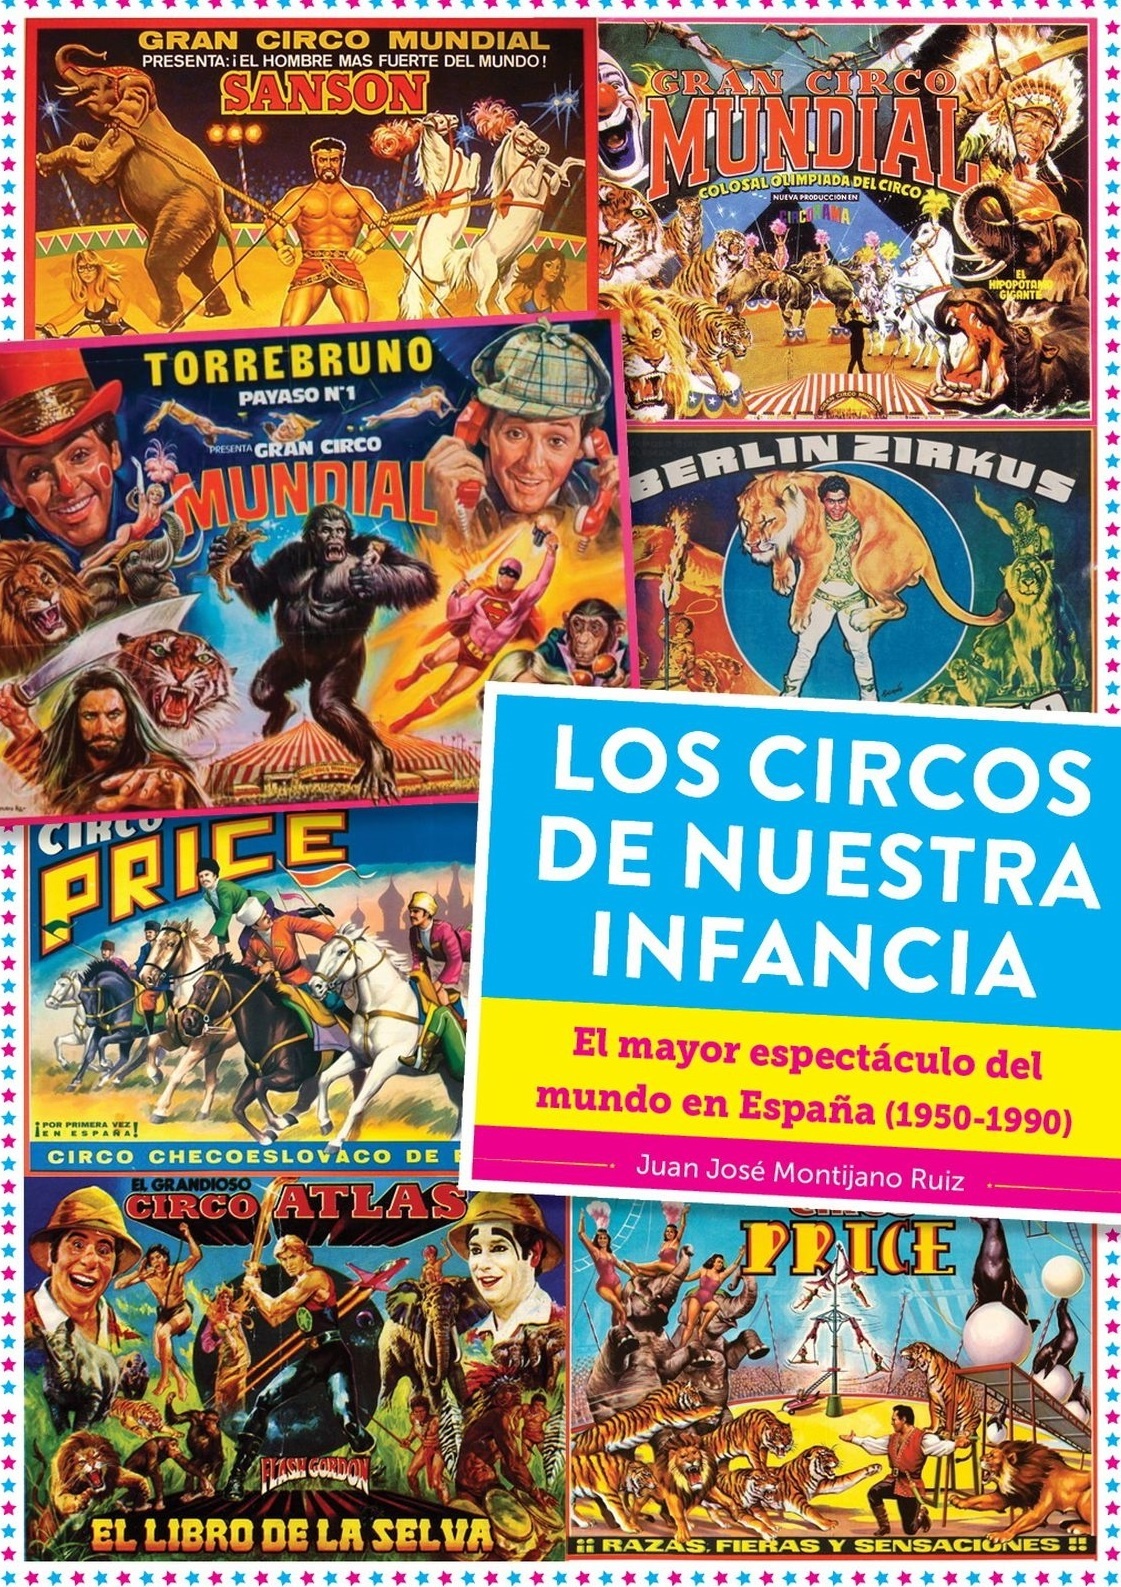 Circos de nuestra infancia, Los "El mayor espectáculo del mundo en España (1950-1990)". 